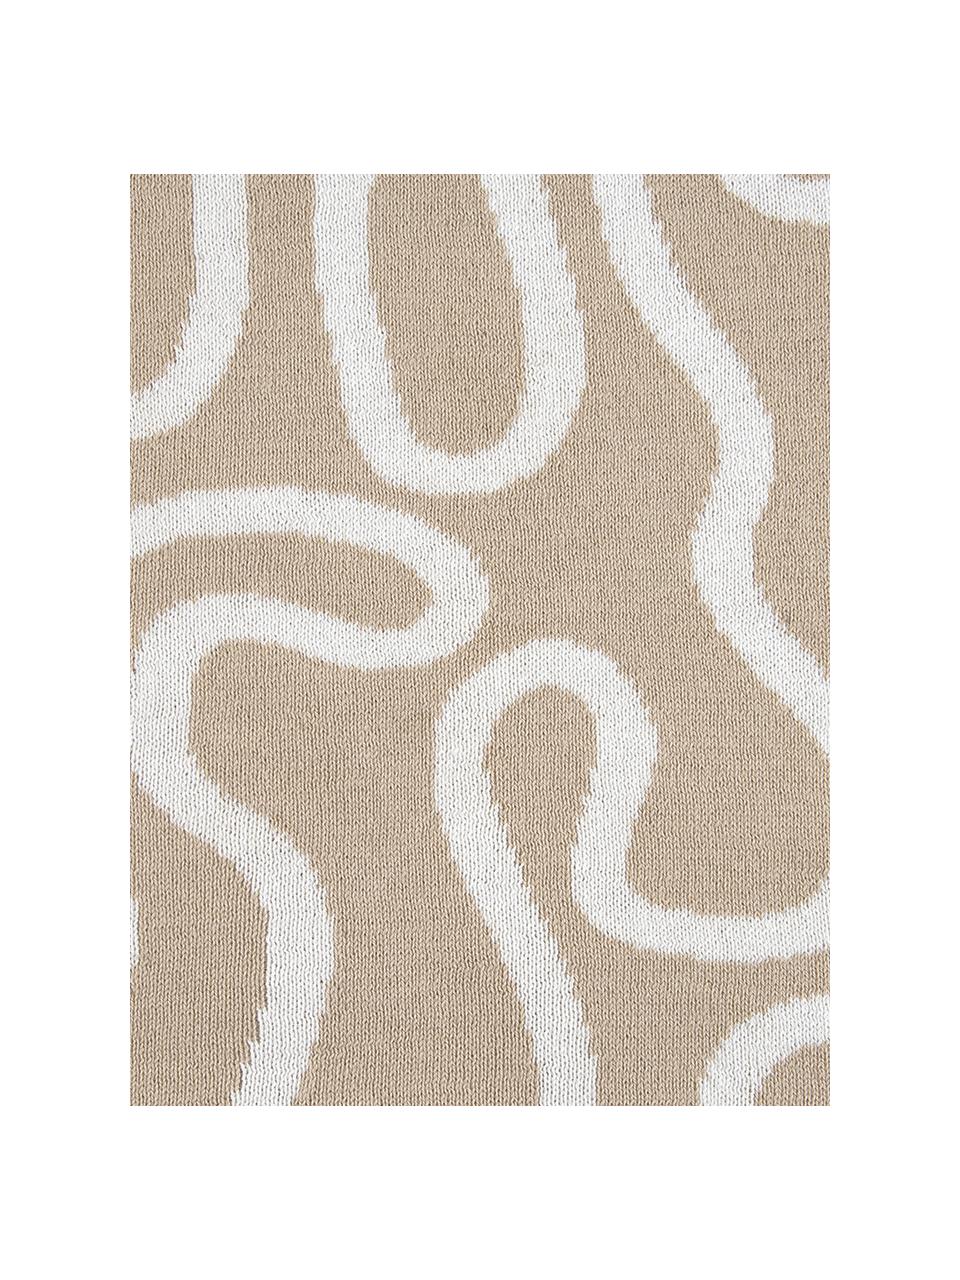 Jemný pletený obojstranný pléd Amina s abstraktným vzorom s čiarami, Béžová/biela